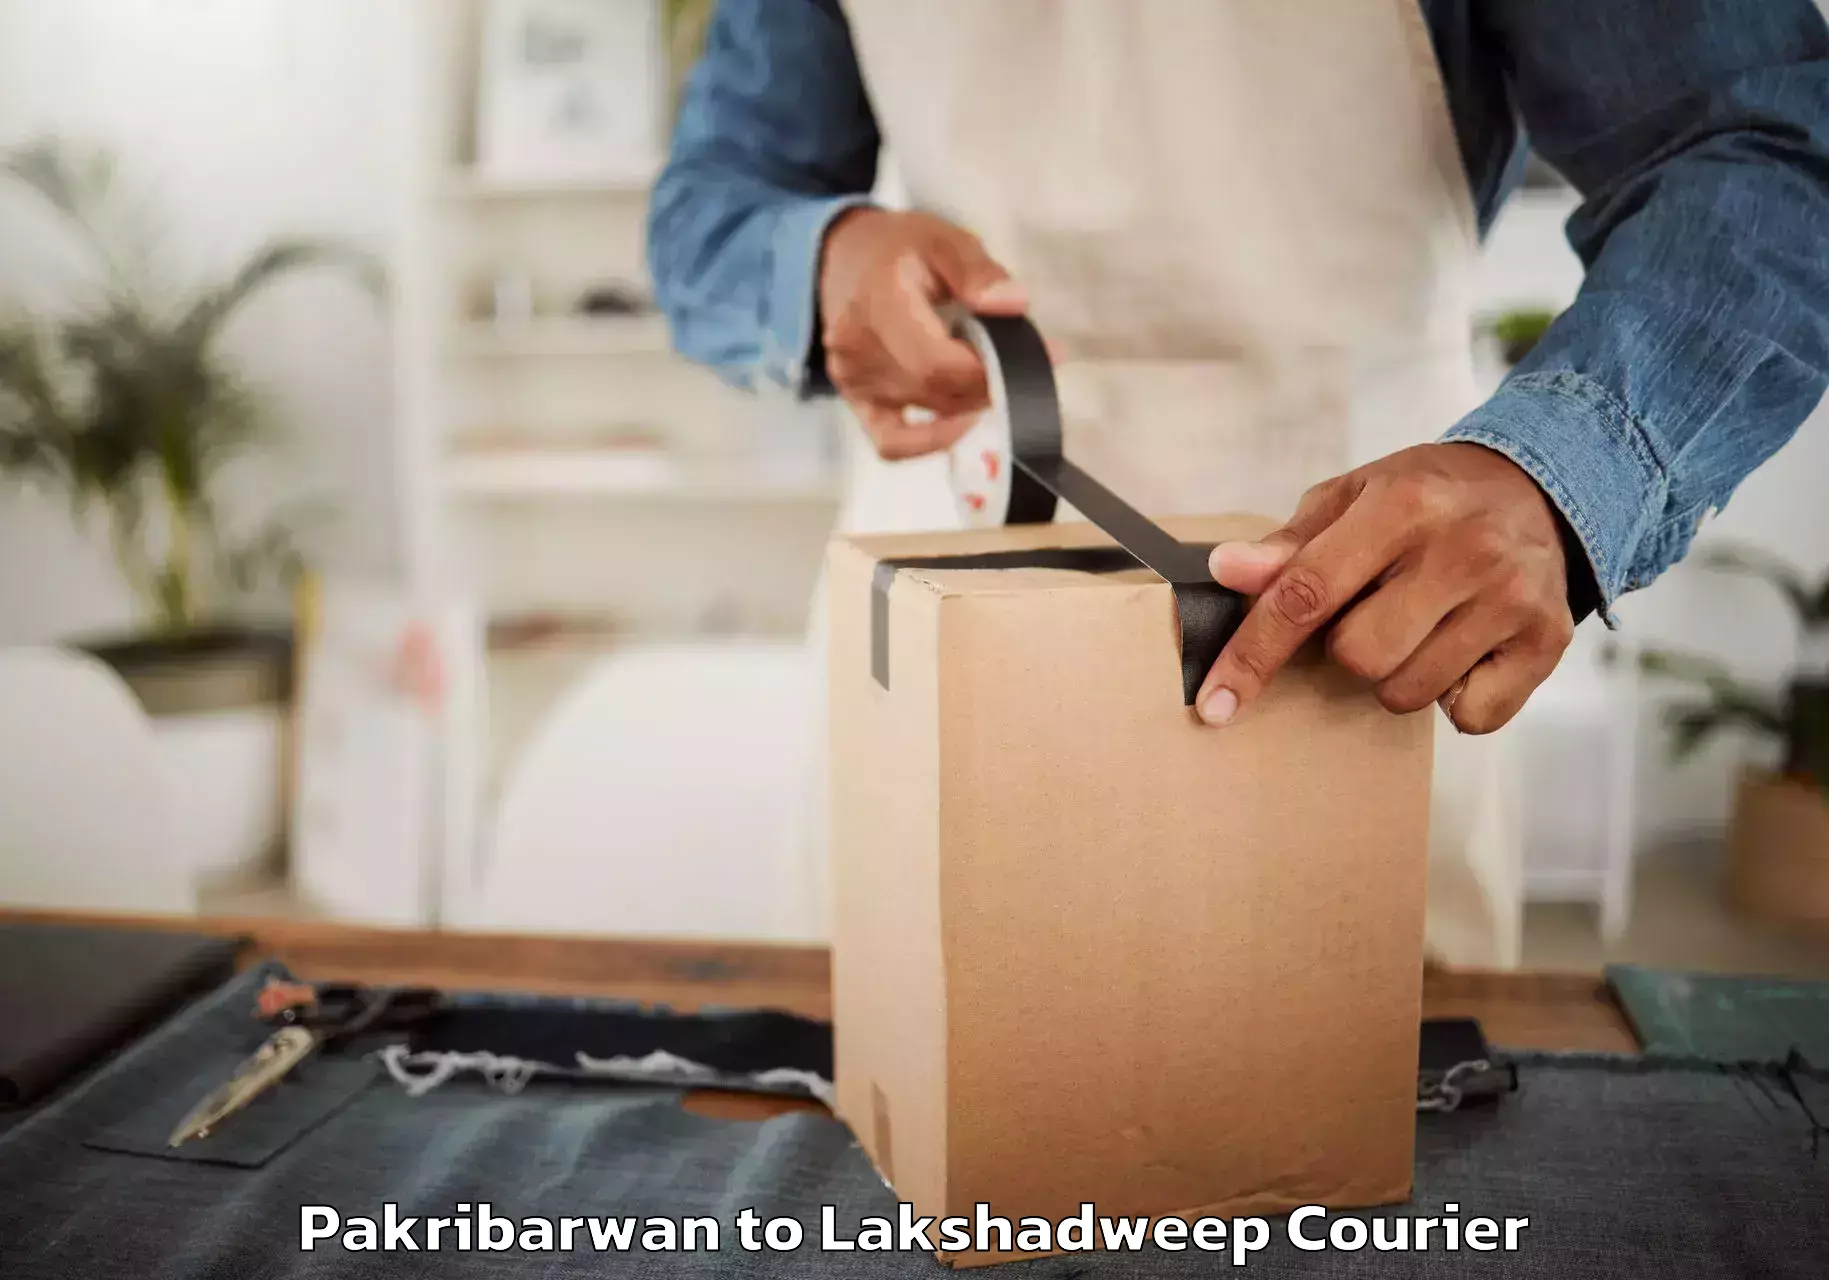 Skilled furniture transporters Pakribarwan to Lakshadweep